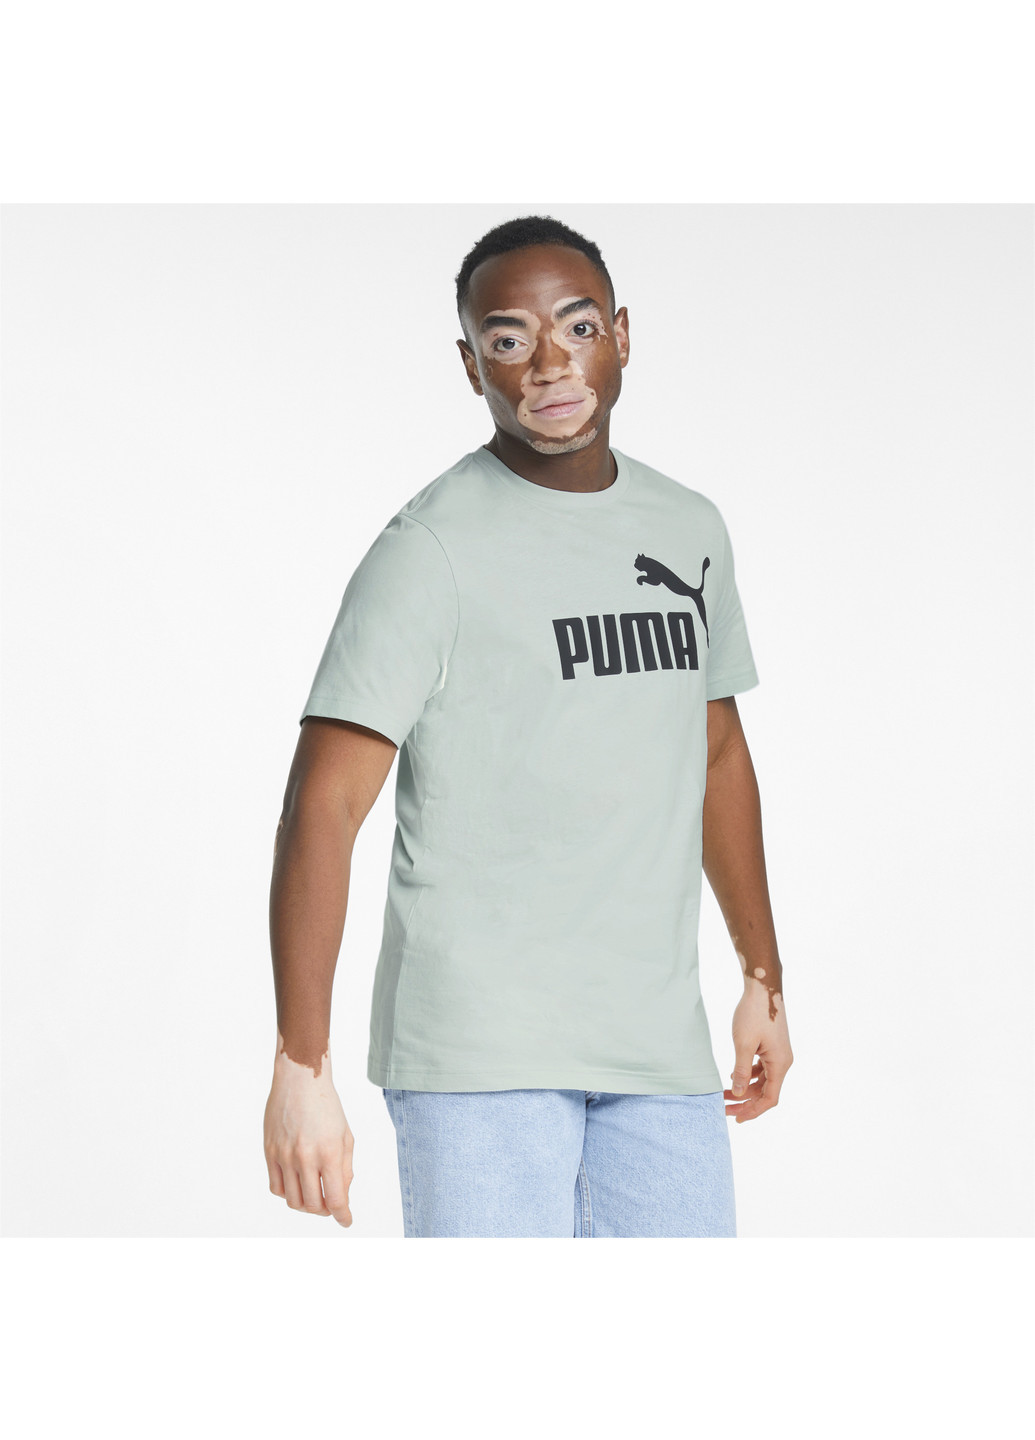 Синяя футболка essentials logo men's tee Puma